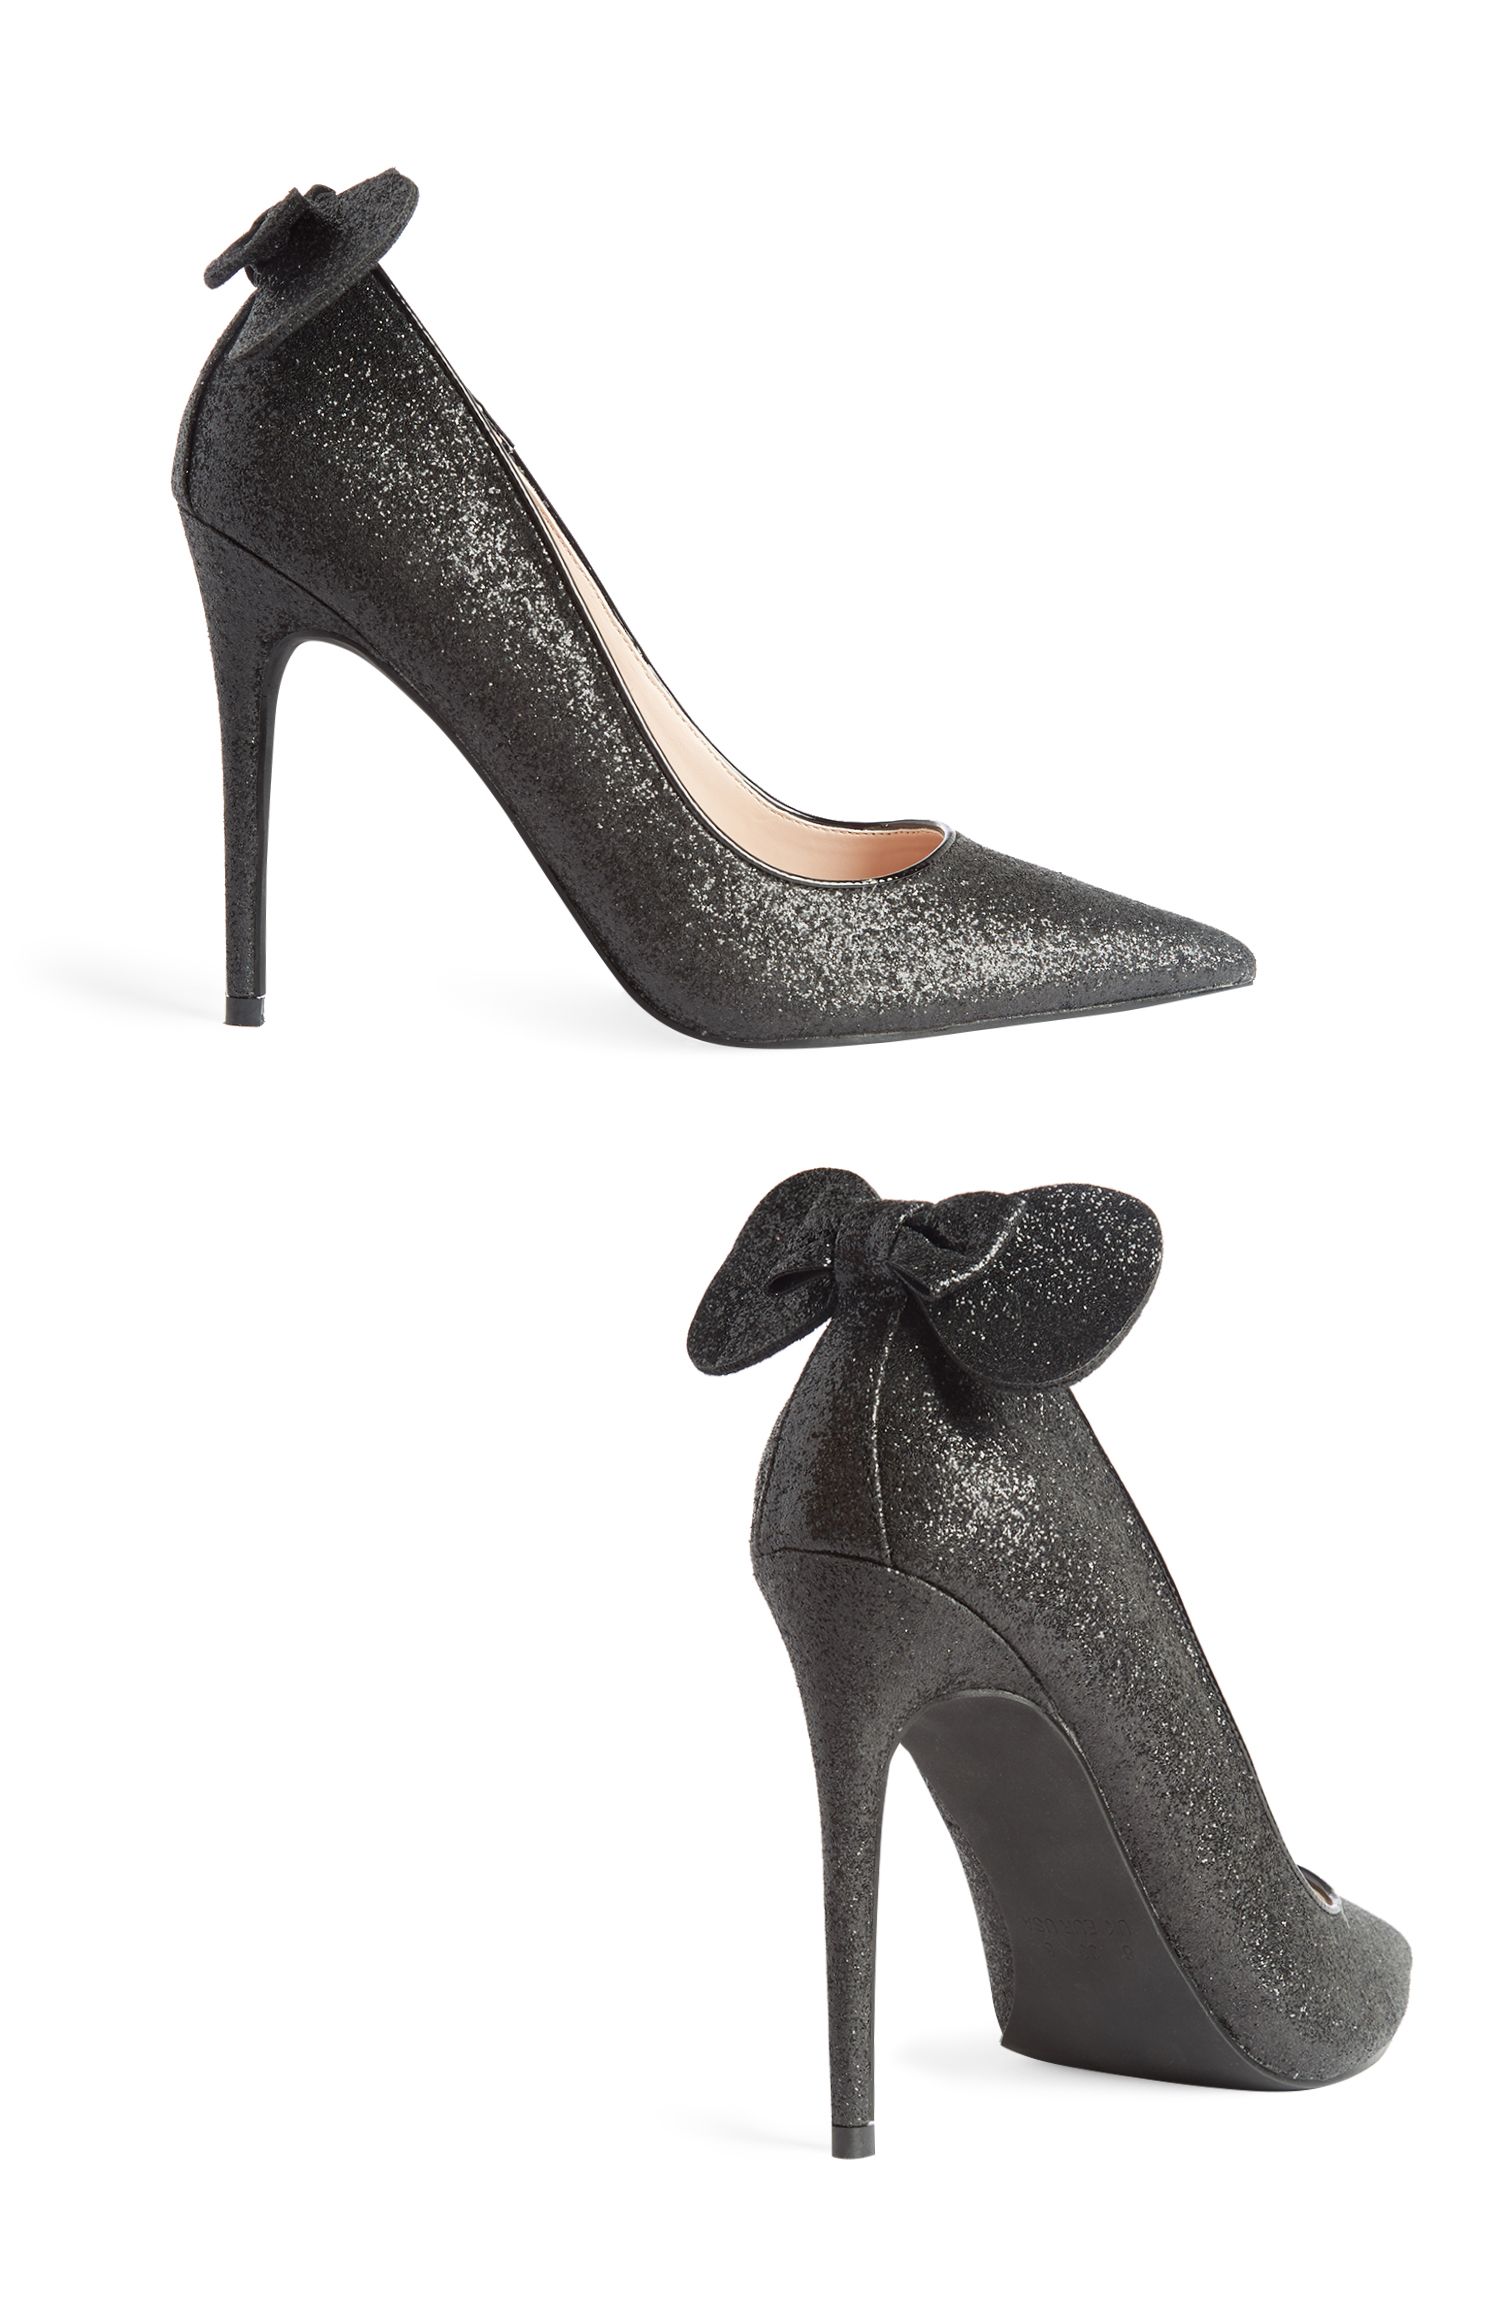 primark black heels